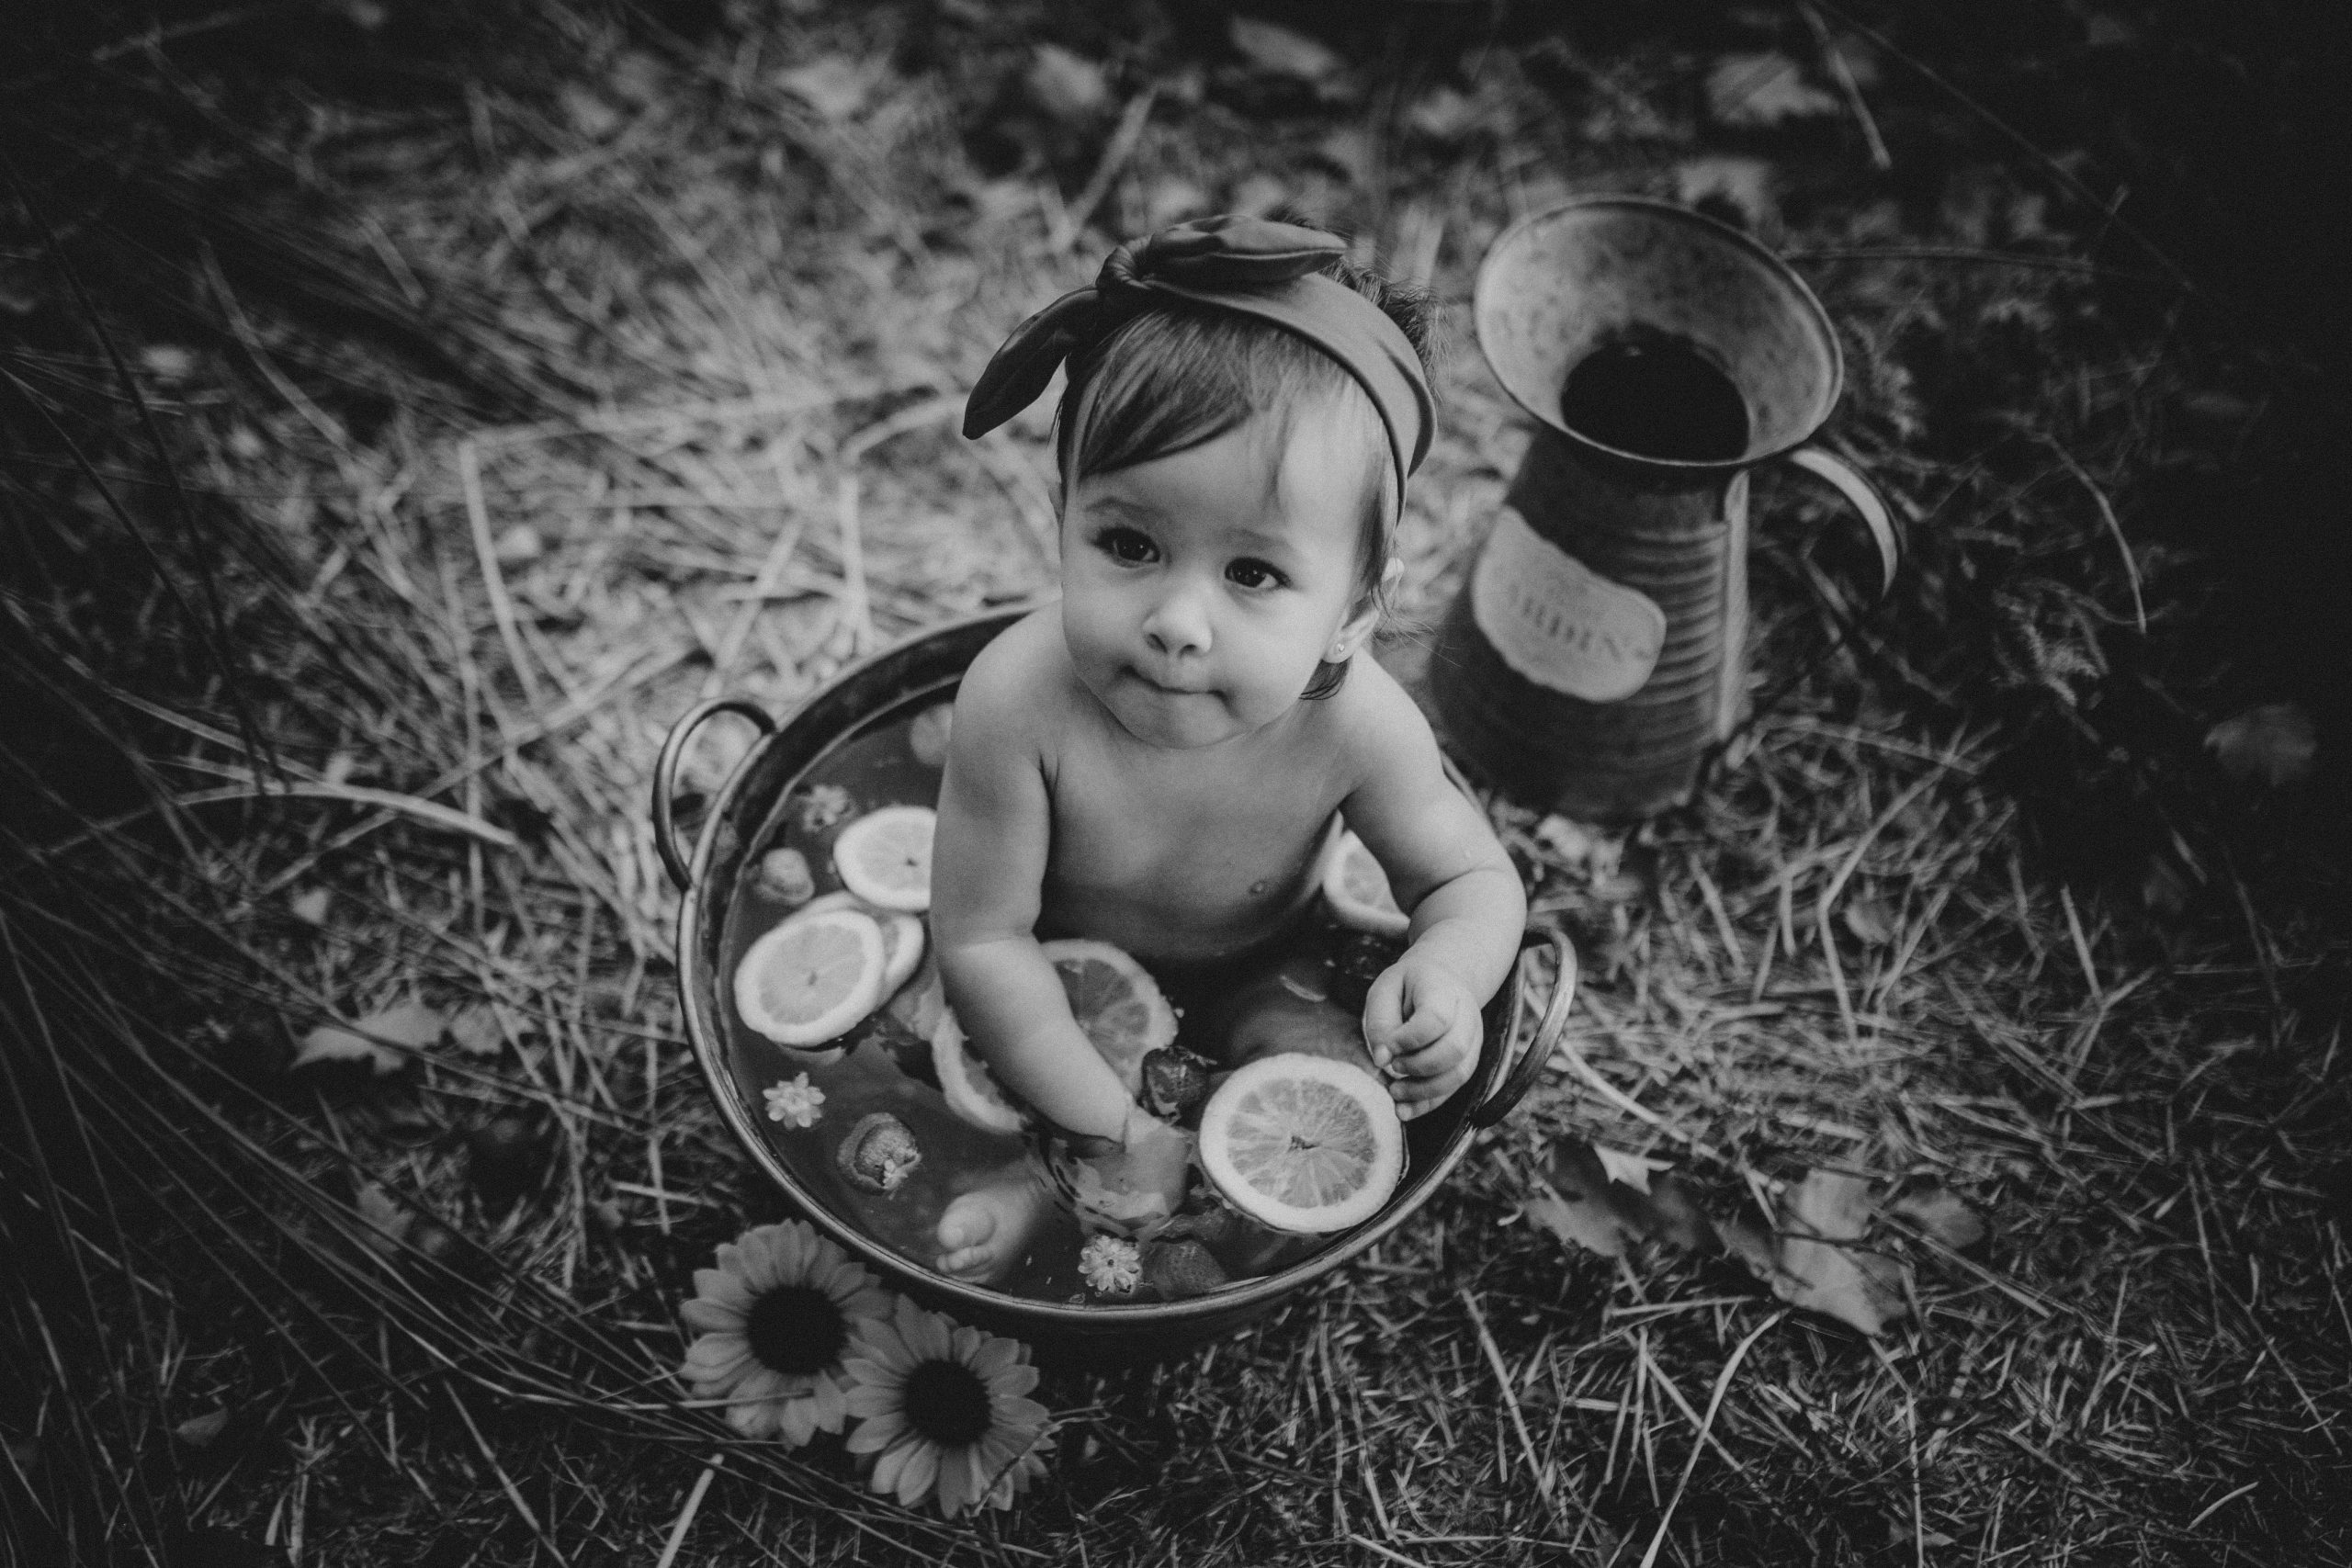 Fotografía en blanco y negro de una niña en un cubo lleno de agua